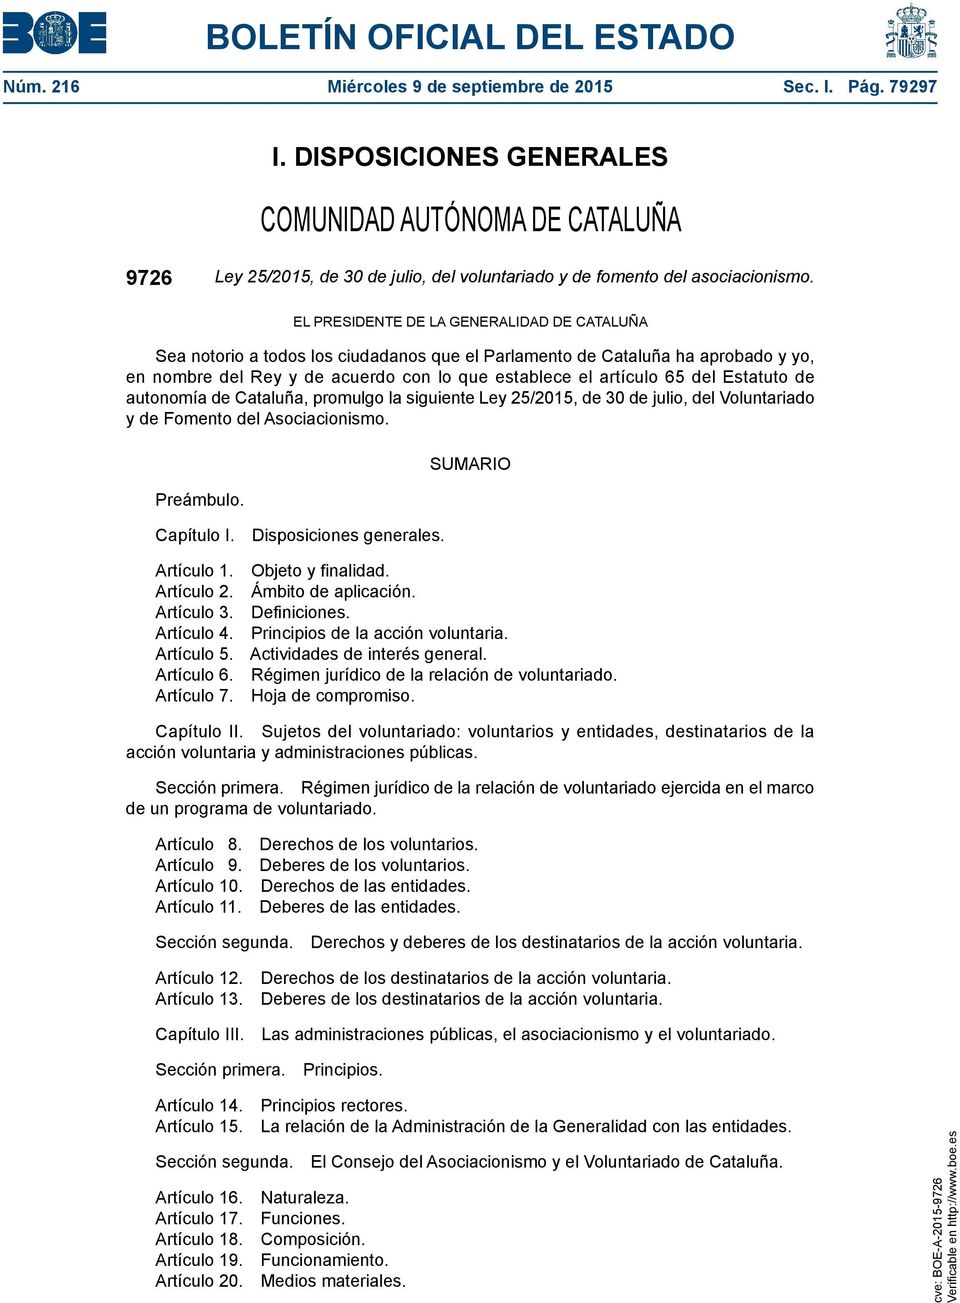 EL PRESIDENTE DE LA GENERALIDAD DE CATALUÑA Sea notorio a todos los ciudadanos que el Parlamento de Cataluña ha aprobado y yo, en nombre del Rey y de acuerdo con lo que establece el artículo 65 del